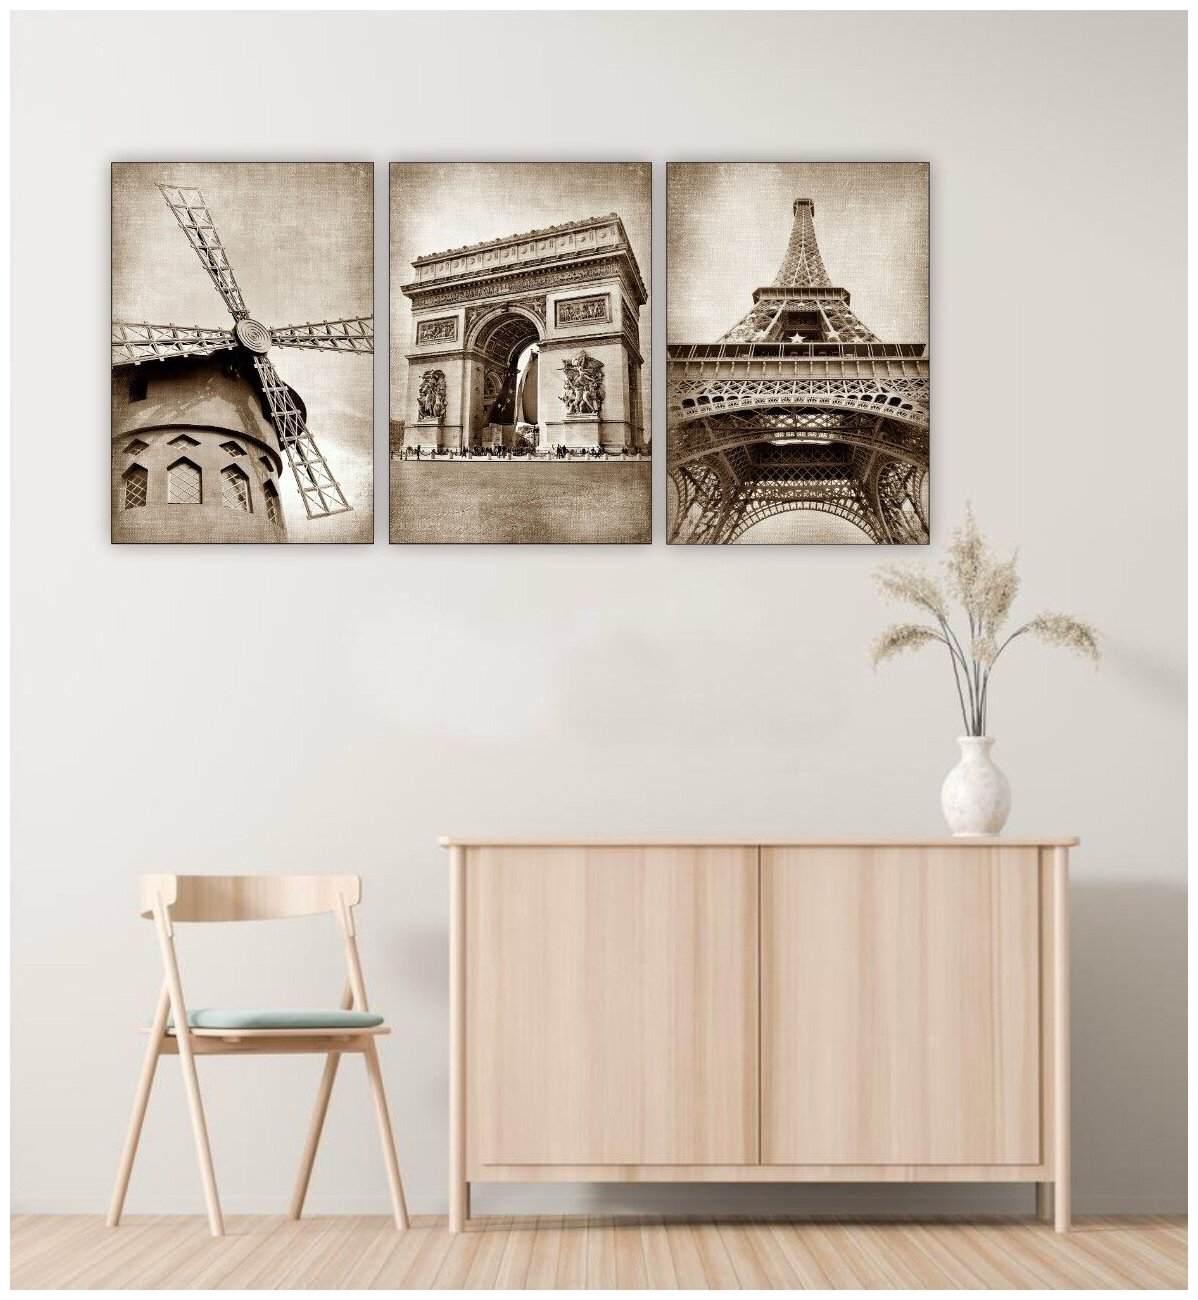 Комплект модульных картин на дереве для интерьера "Архитектура Парижа" триптих 90*40см